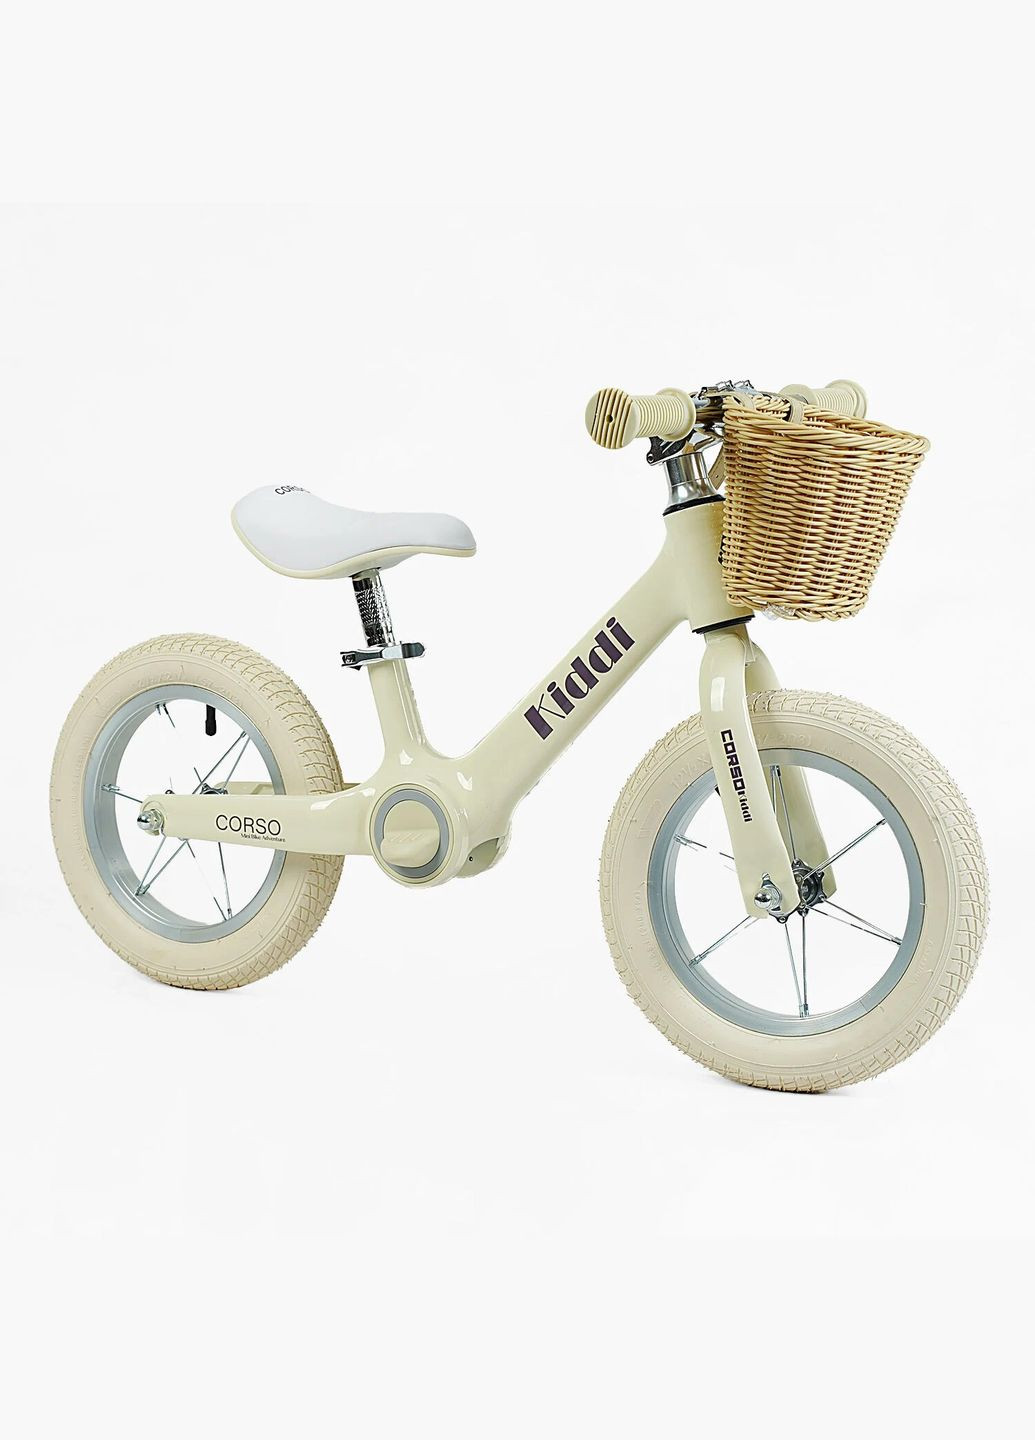 Детский велобег KIDDI ML-12102. Магниевая рама, надувные колеса 12", подставка для ног, корзина Corso (290254806)